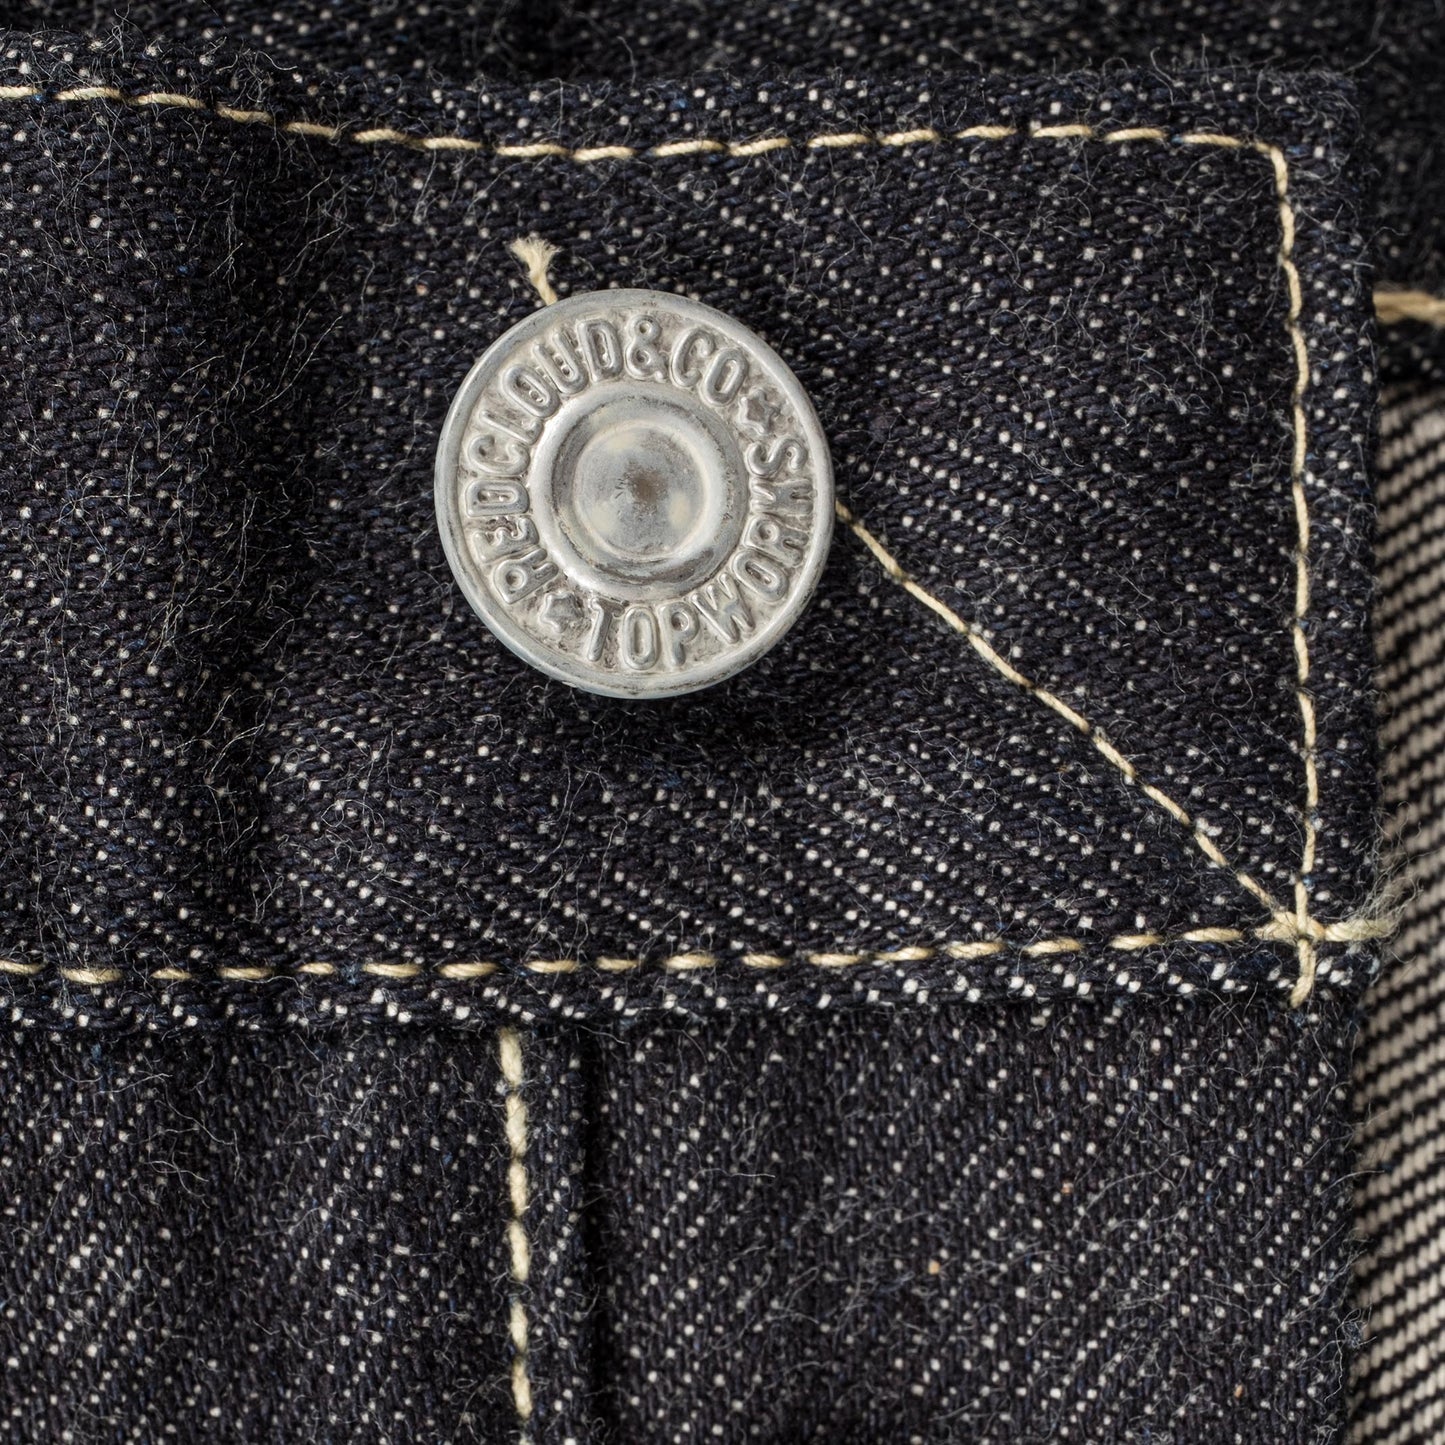 RC S424XX-ST WWII Denim Jeans